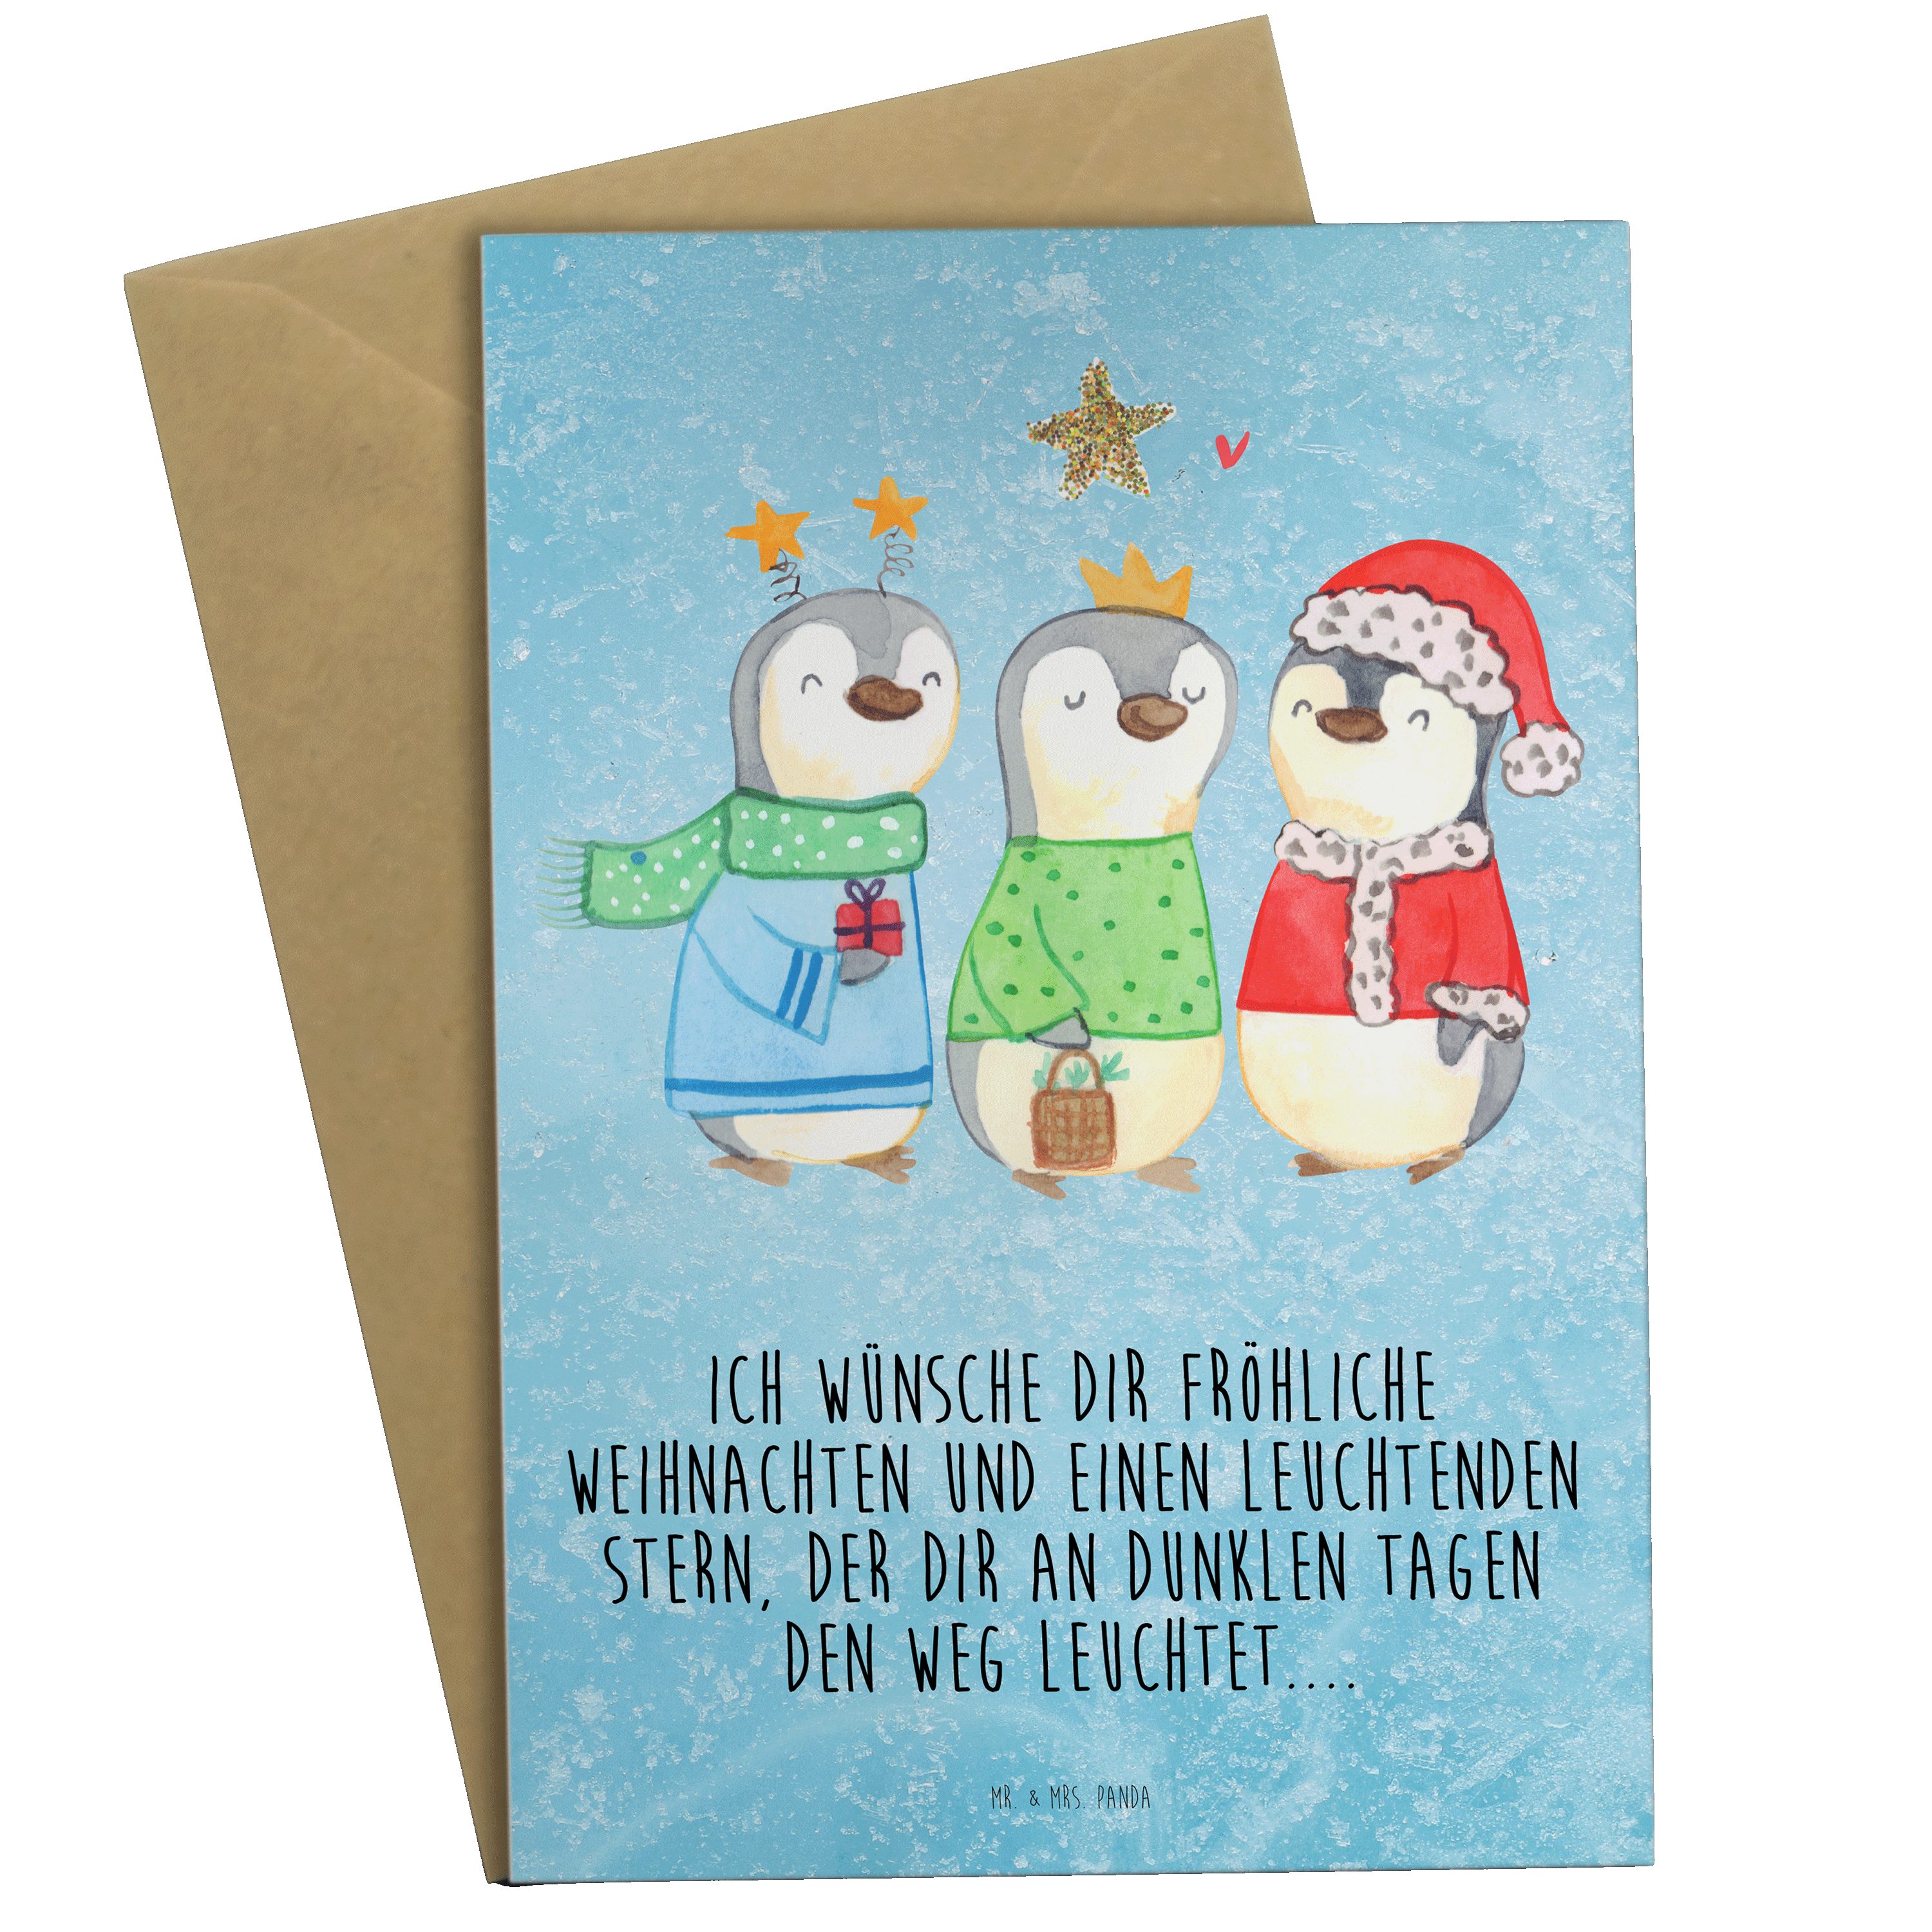 Mr. & Mrs. Panda Grußkarte Winterzeit Heilige drei Könige - Eisblau - Geschenk, Weihnachtsdeko